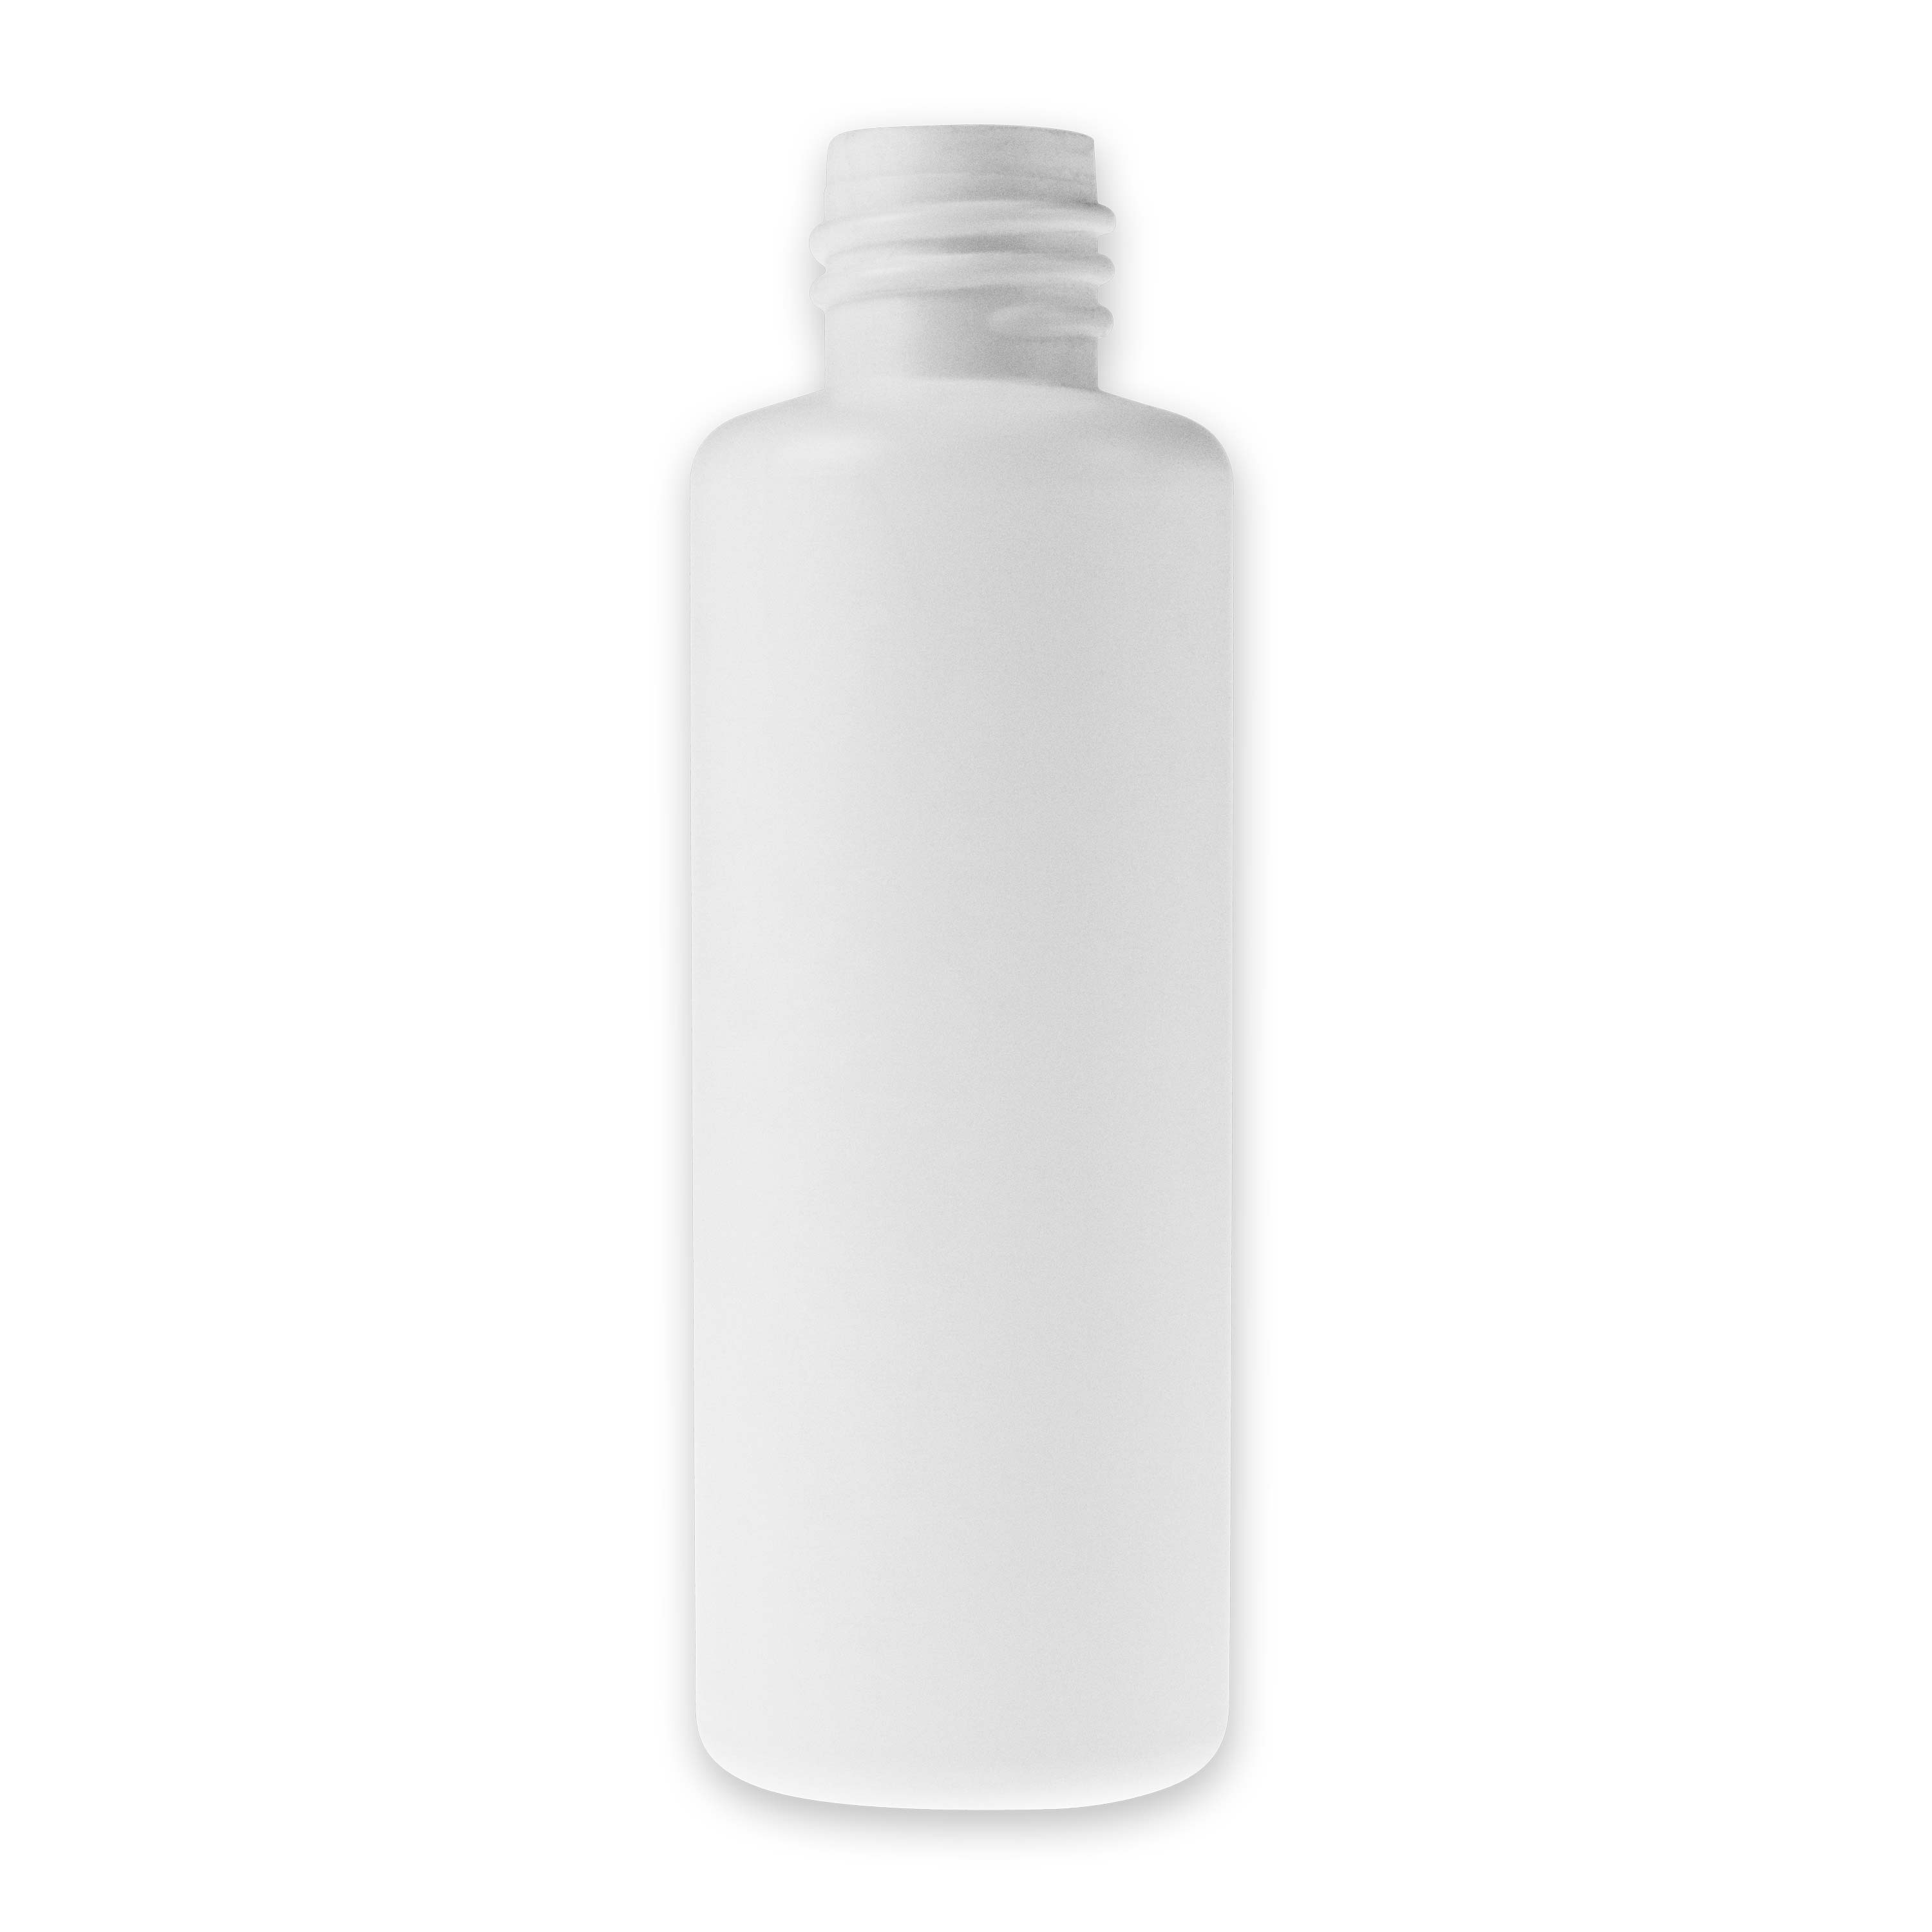 Zylindrische Rundflasche aus HDPE weiß 50 ml